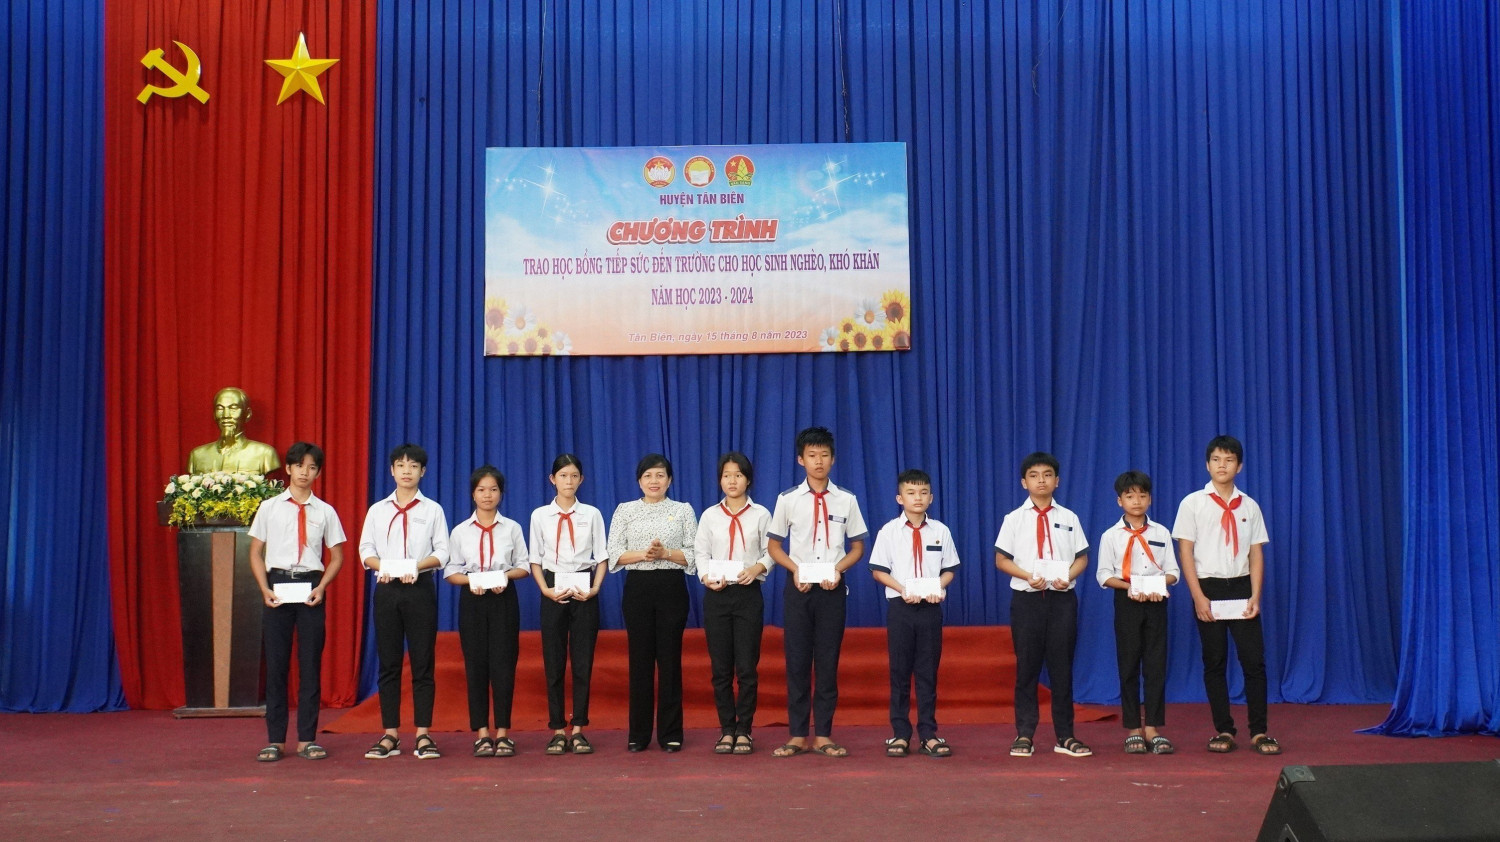 Tân Biên: Trao 60 suất học bổng cho học sinh nghèo khó khăn năm học 2023 - 2024